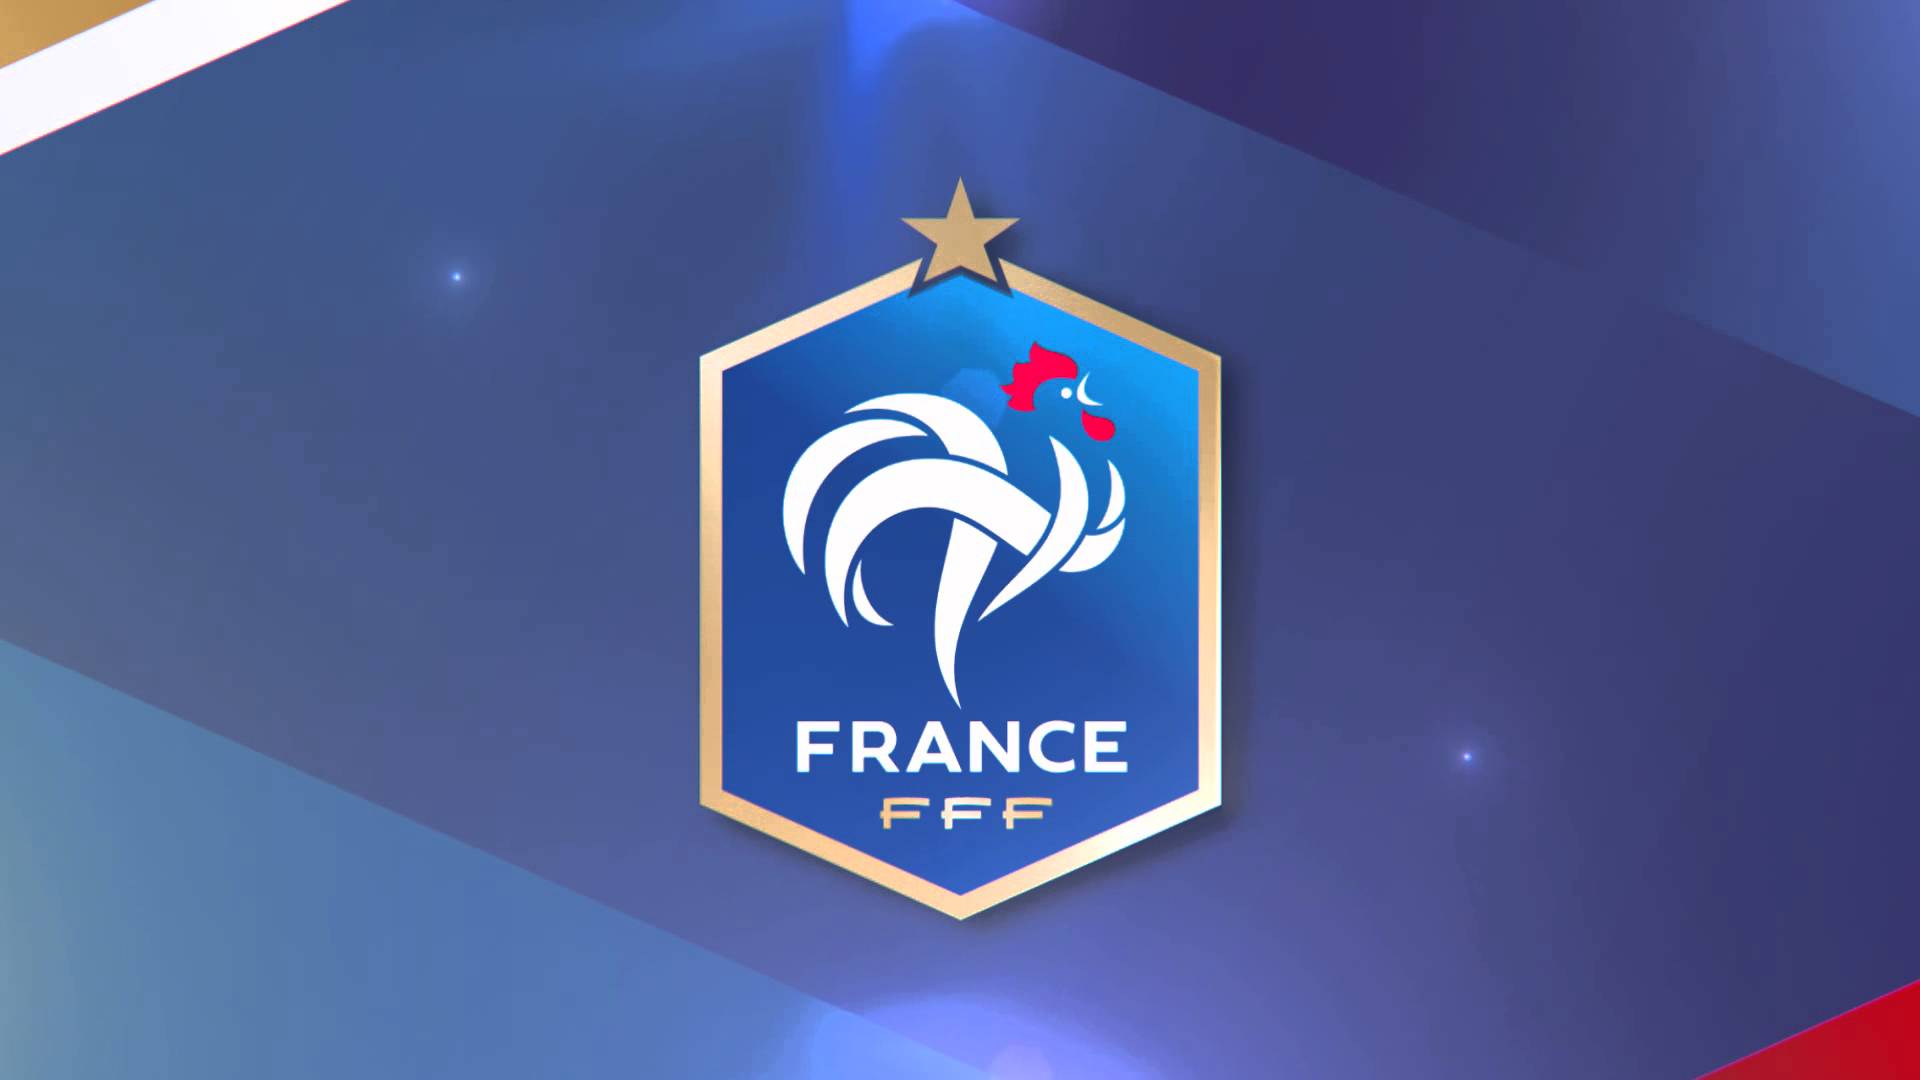 FFF Logo France Football Team wallpaper 2018 in Football